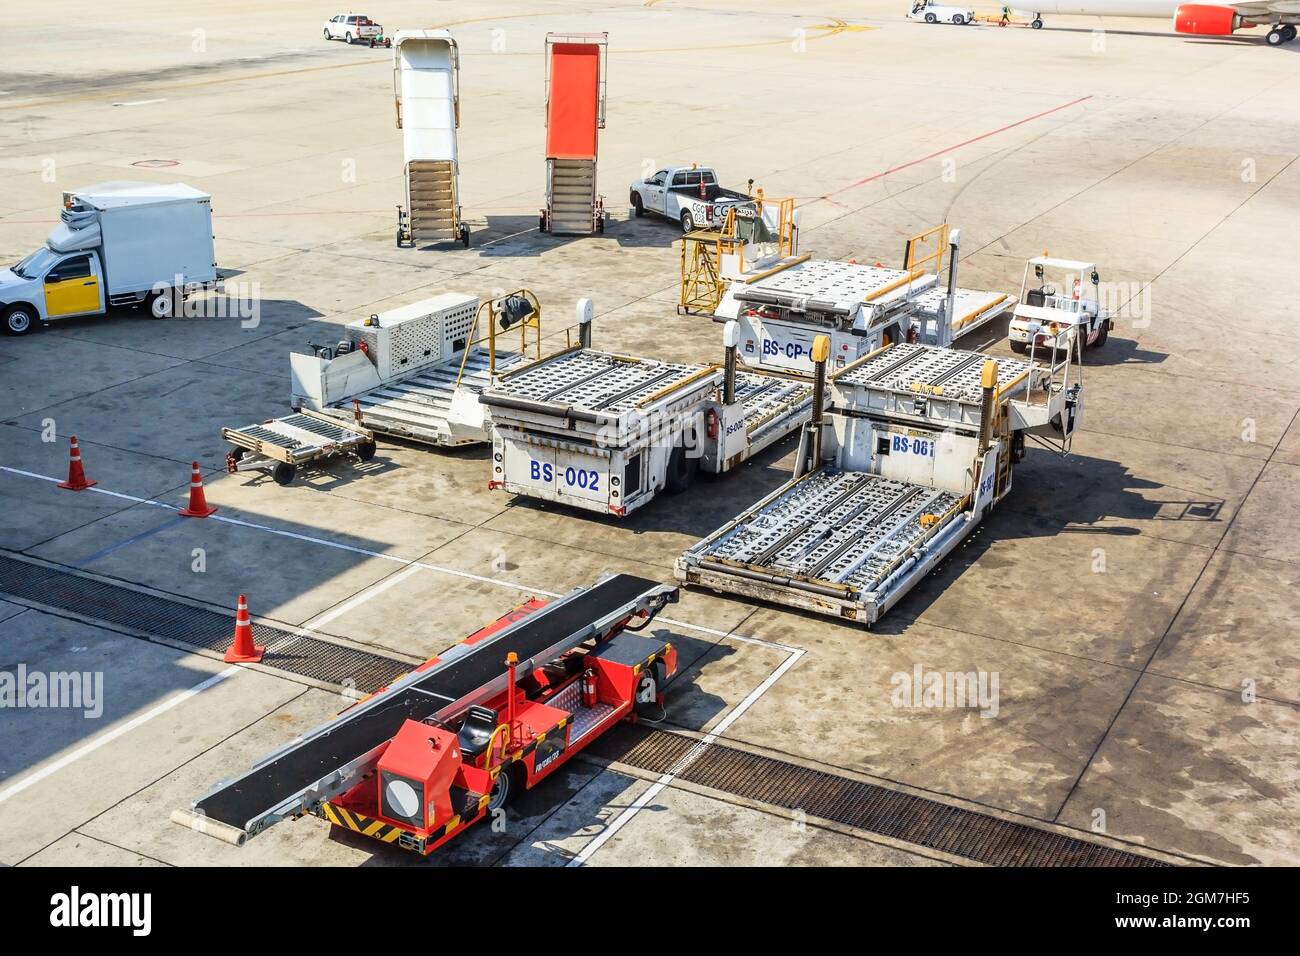 Chariot de remorquage d'avion et échelle près de l'avion sur la piste de l'aéroport. Banque D'Images